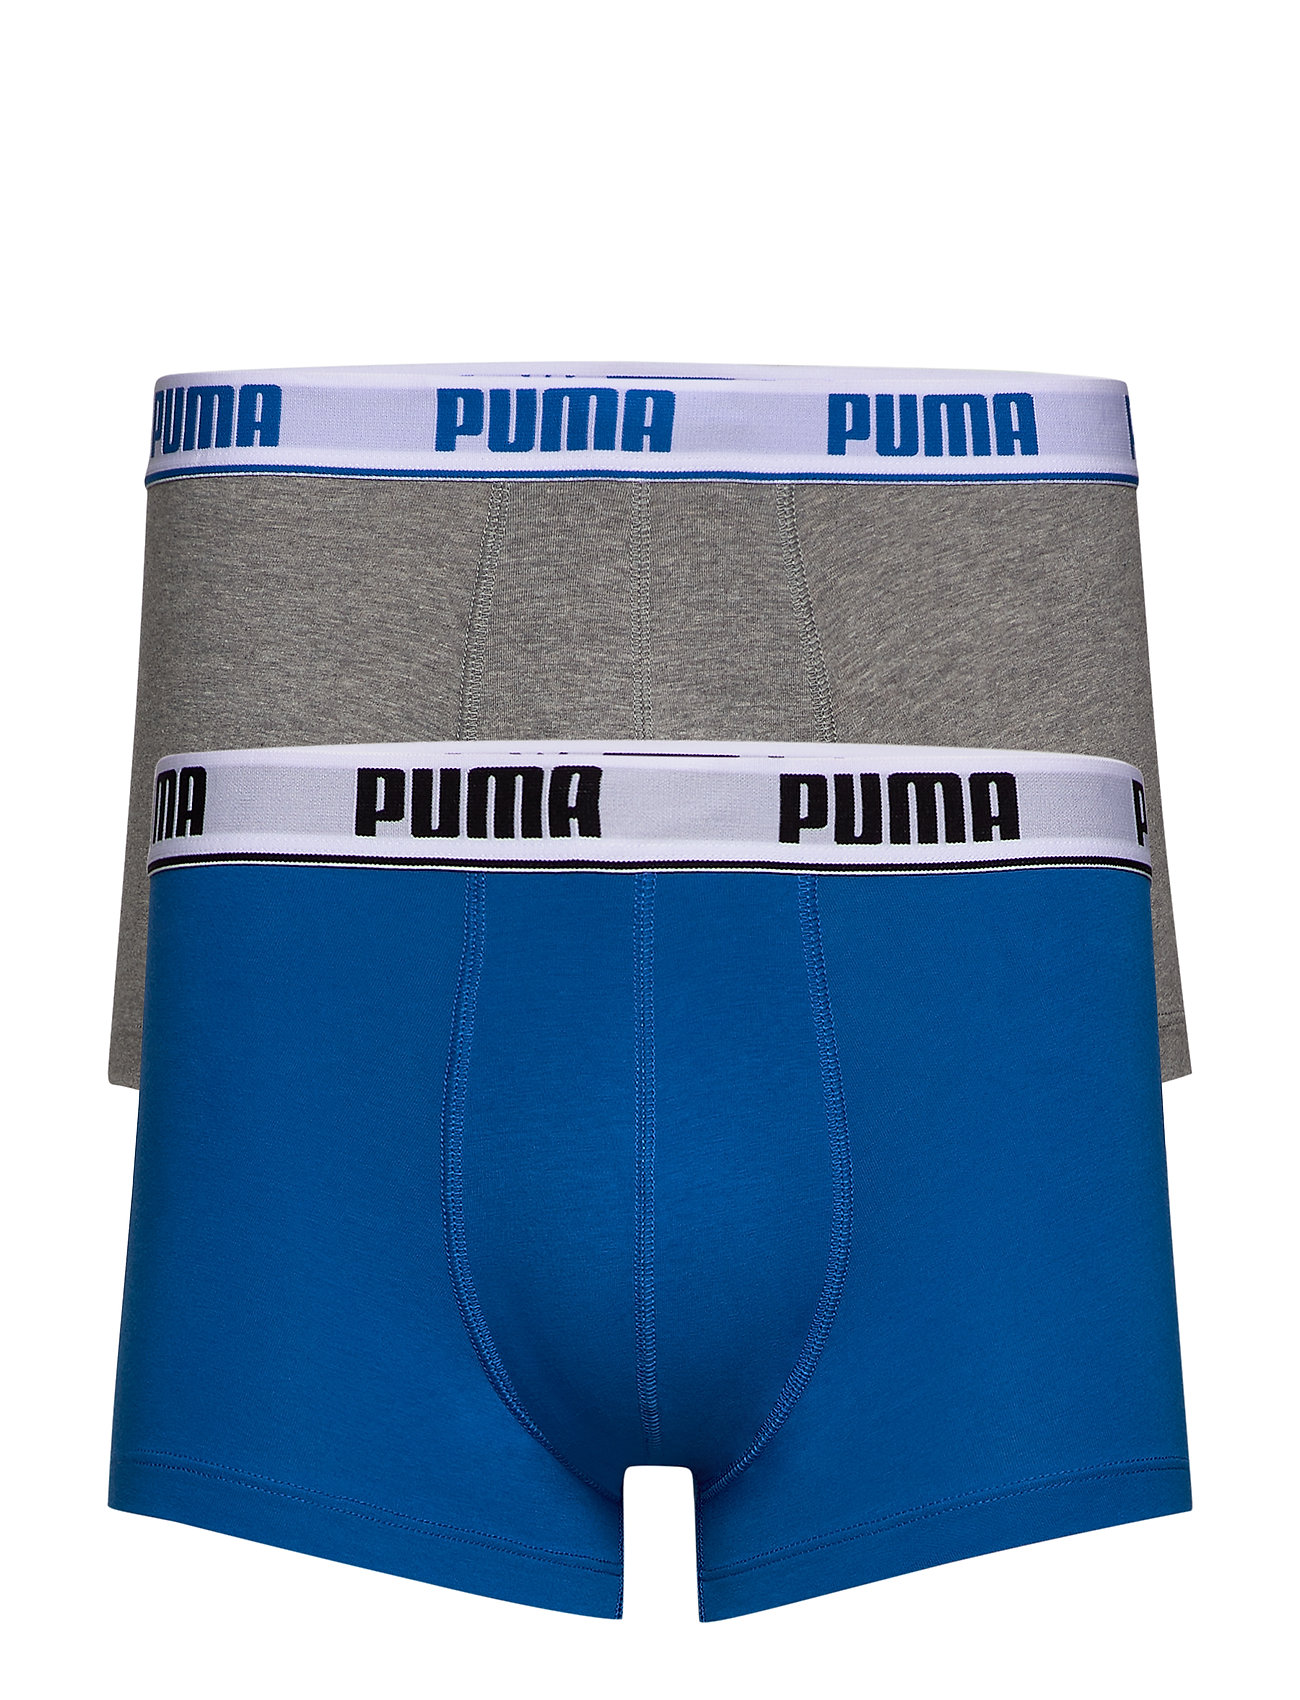 puma basic trunk